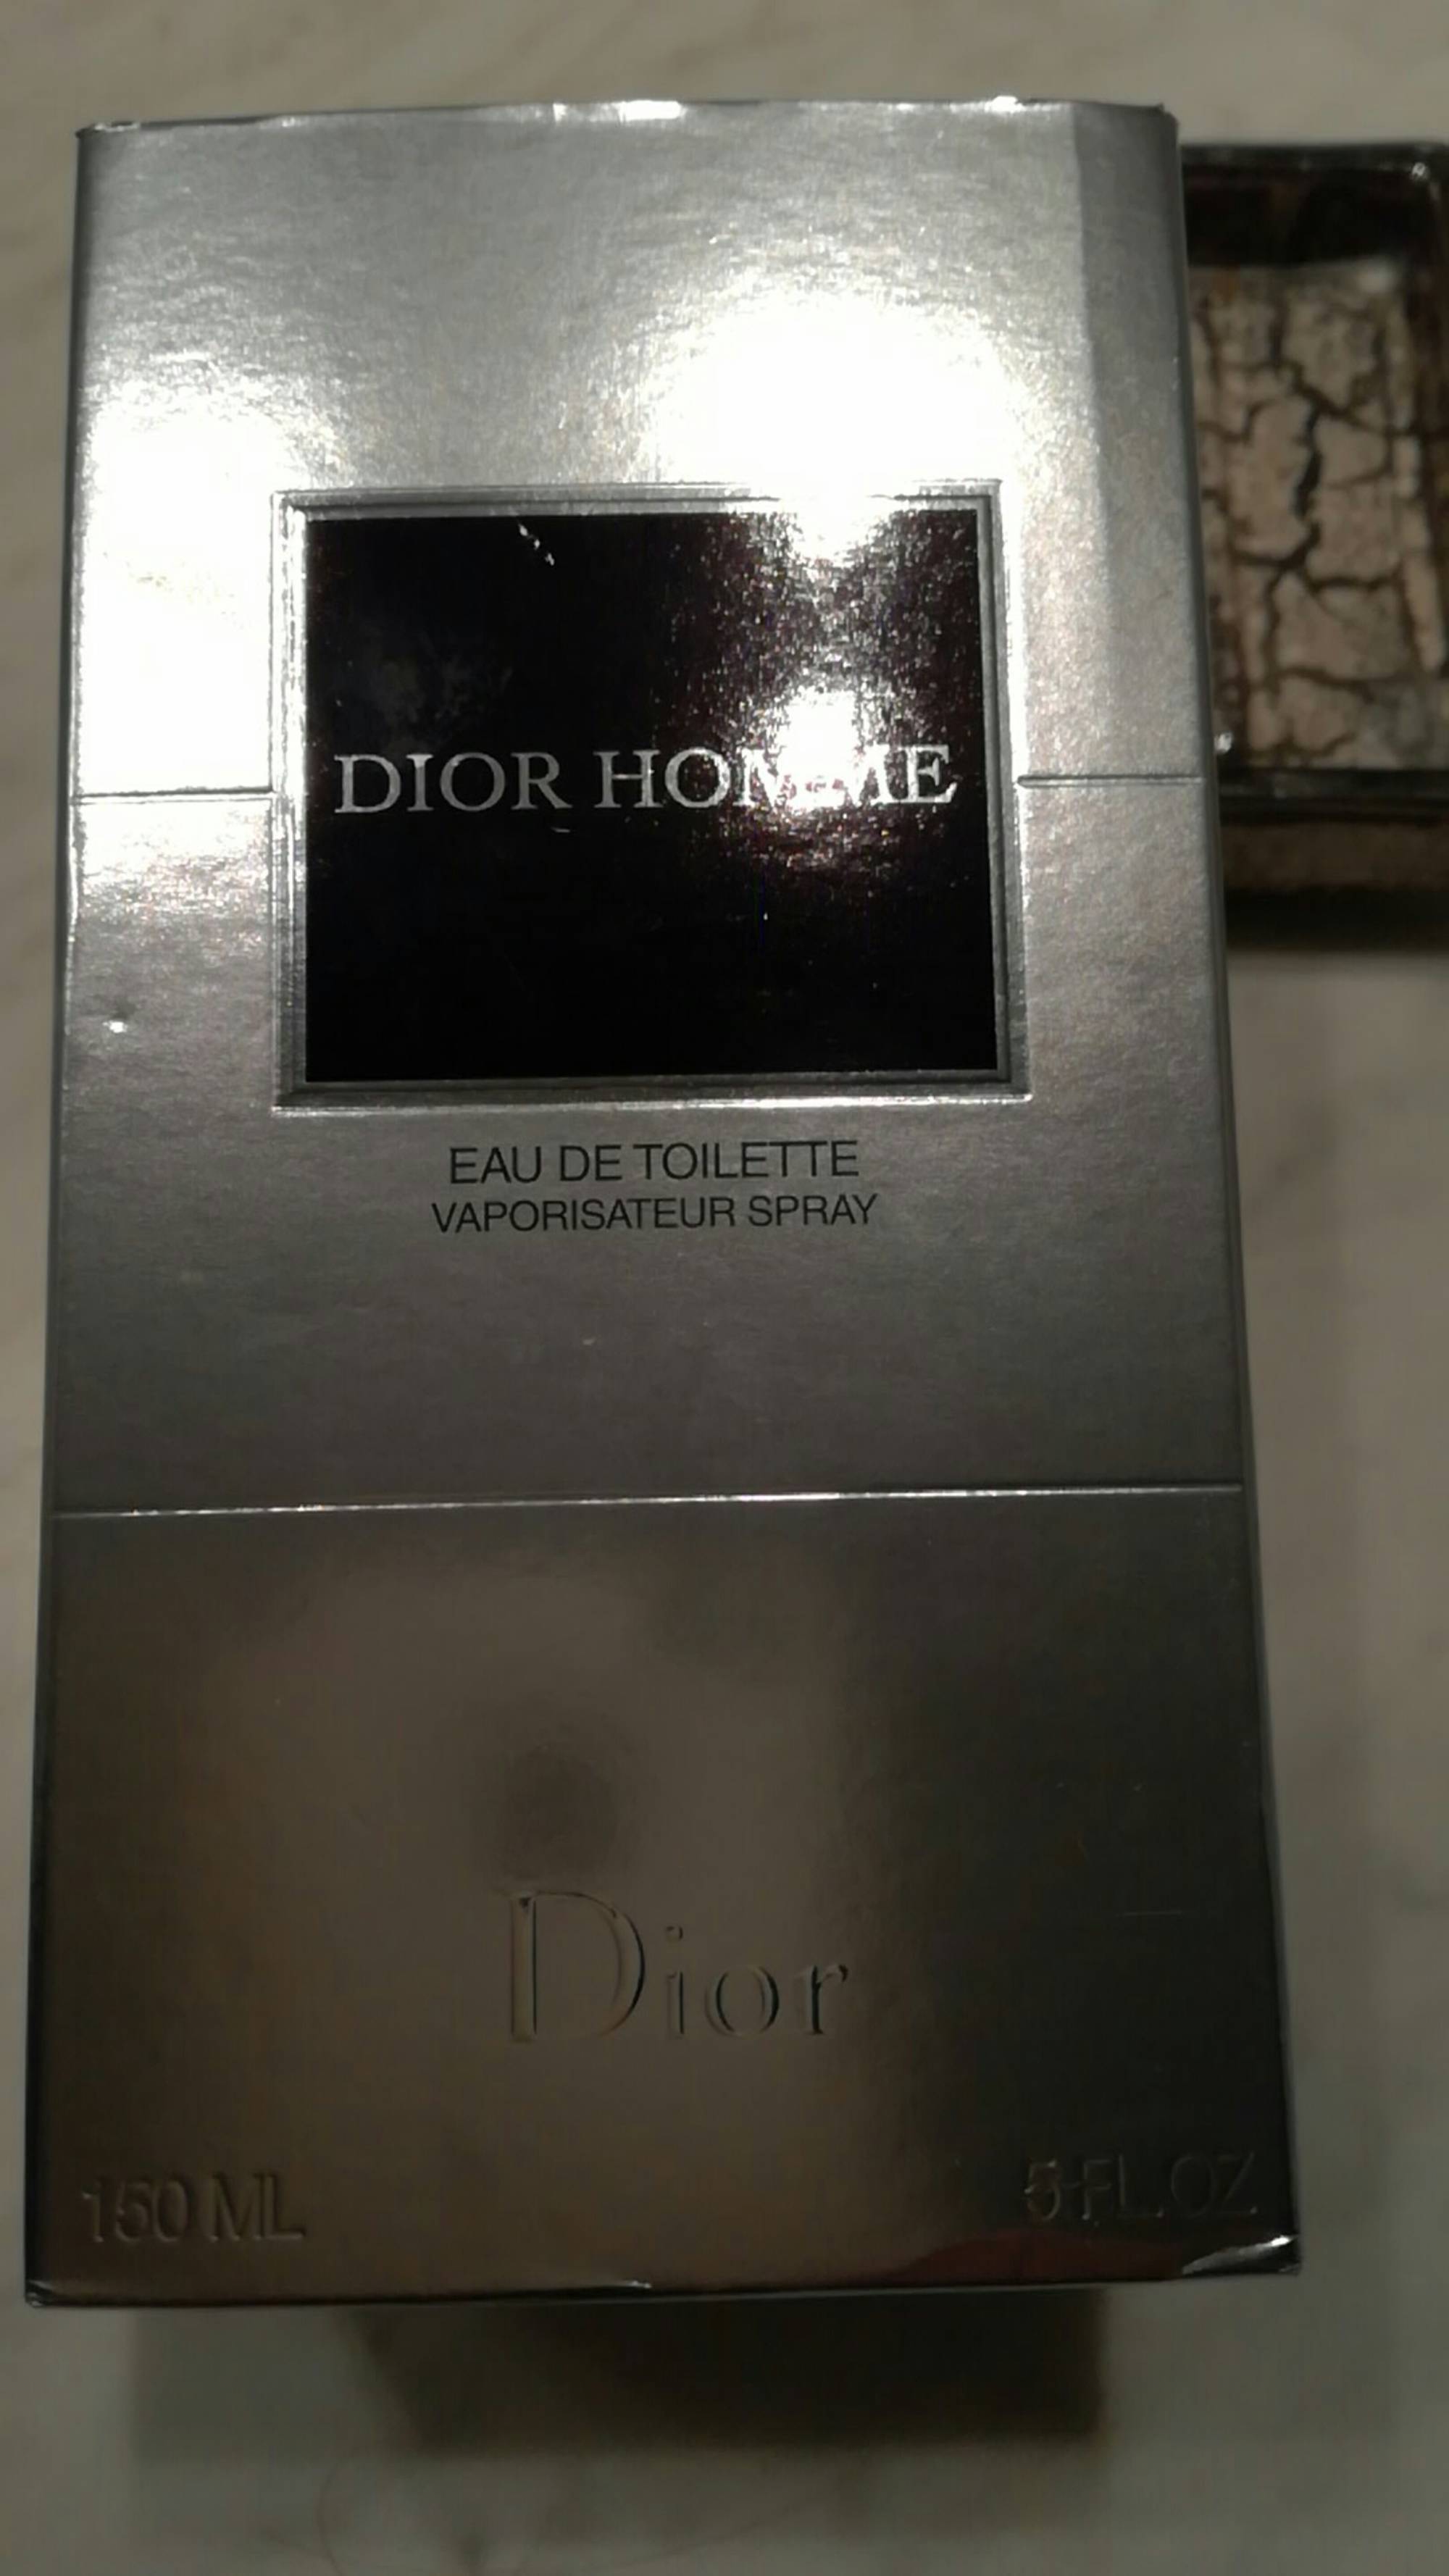 DIOR - Dior homme - Eau de toilette